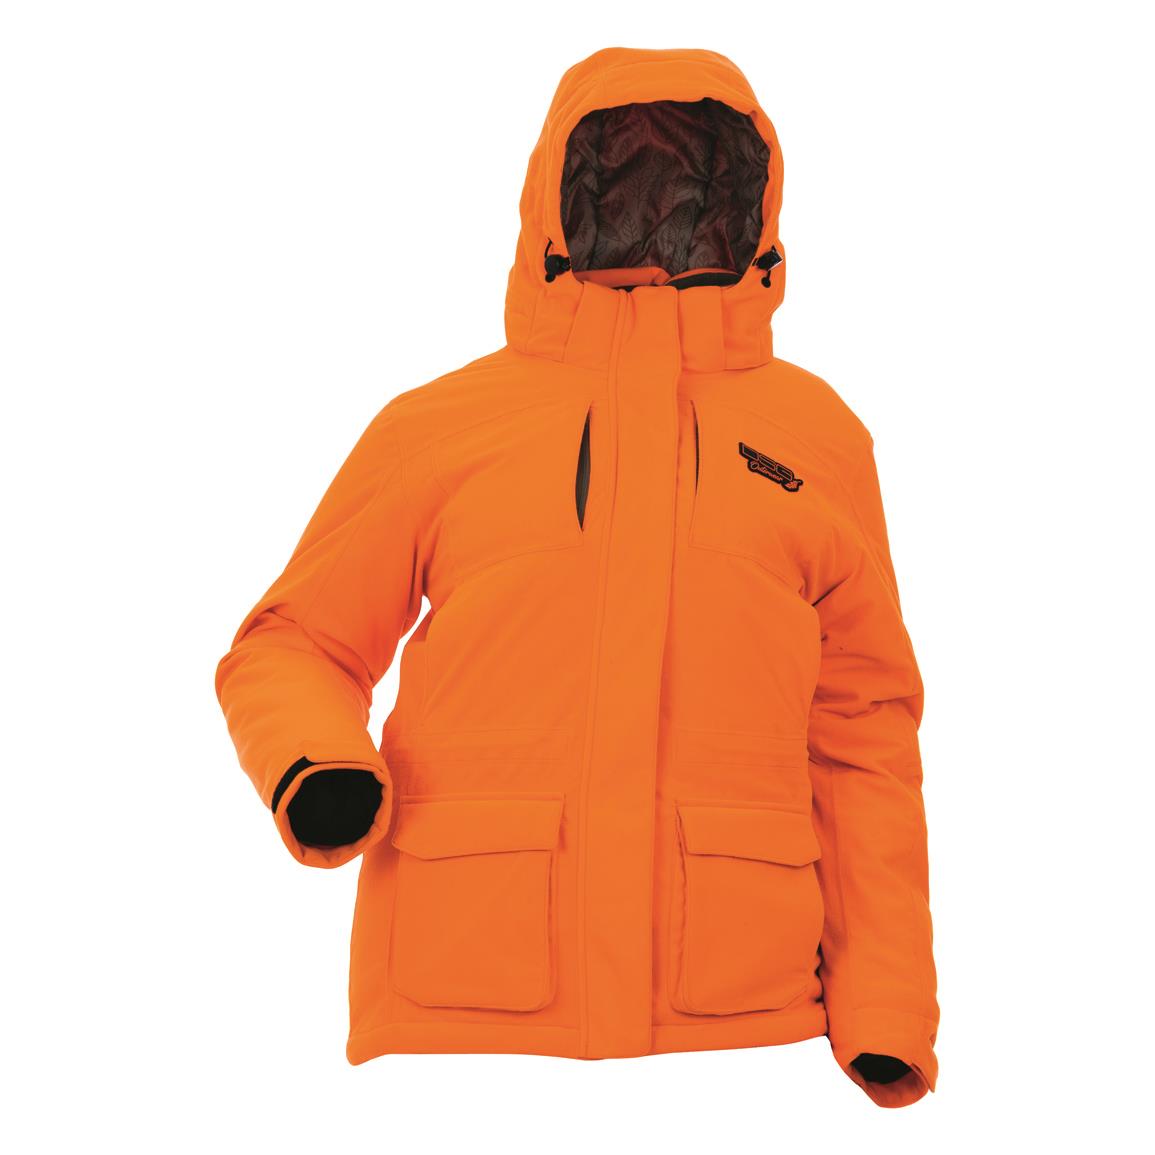 DSG Outerwear Women's Kylie 5.0 3-in-1 Jacket, Blaze Orange